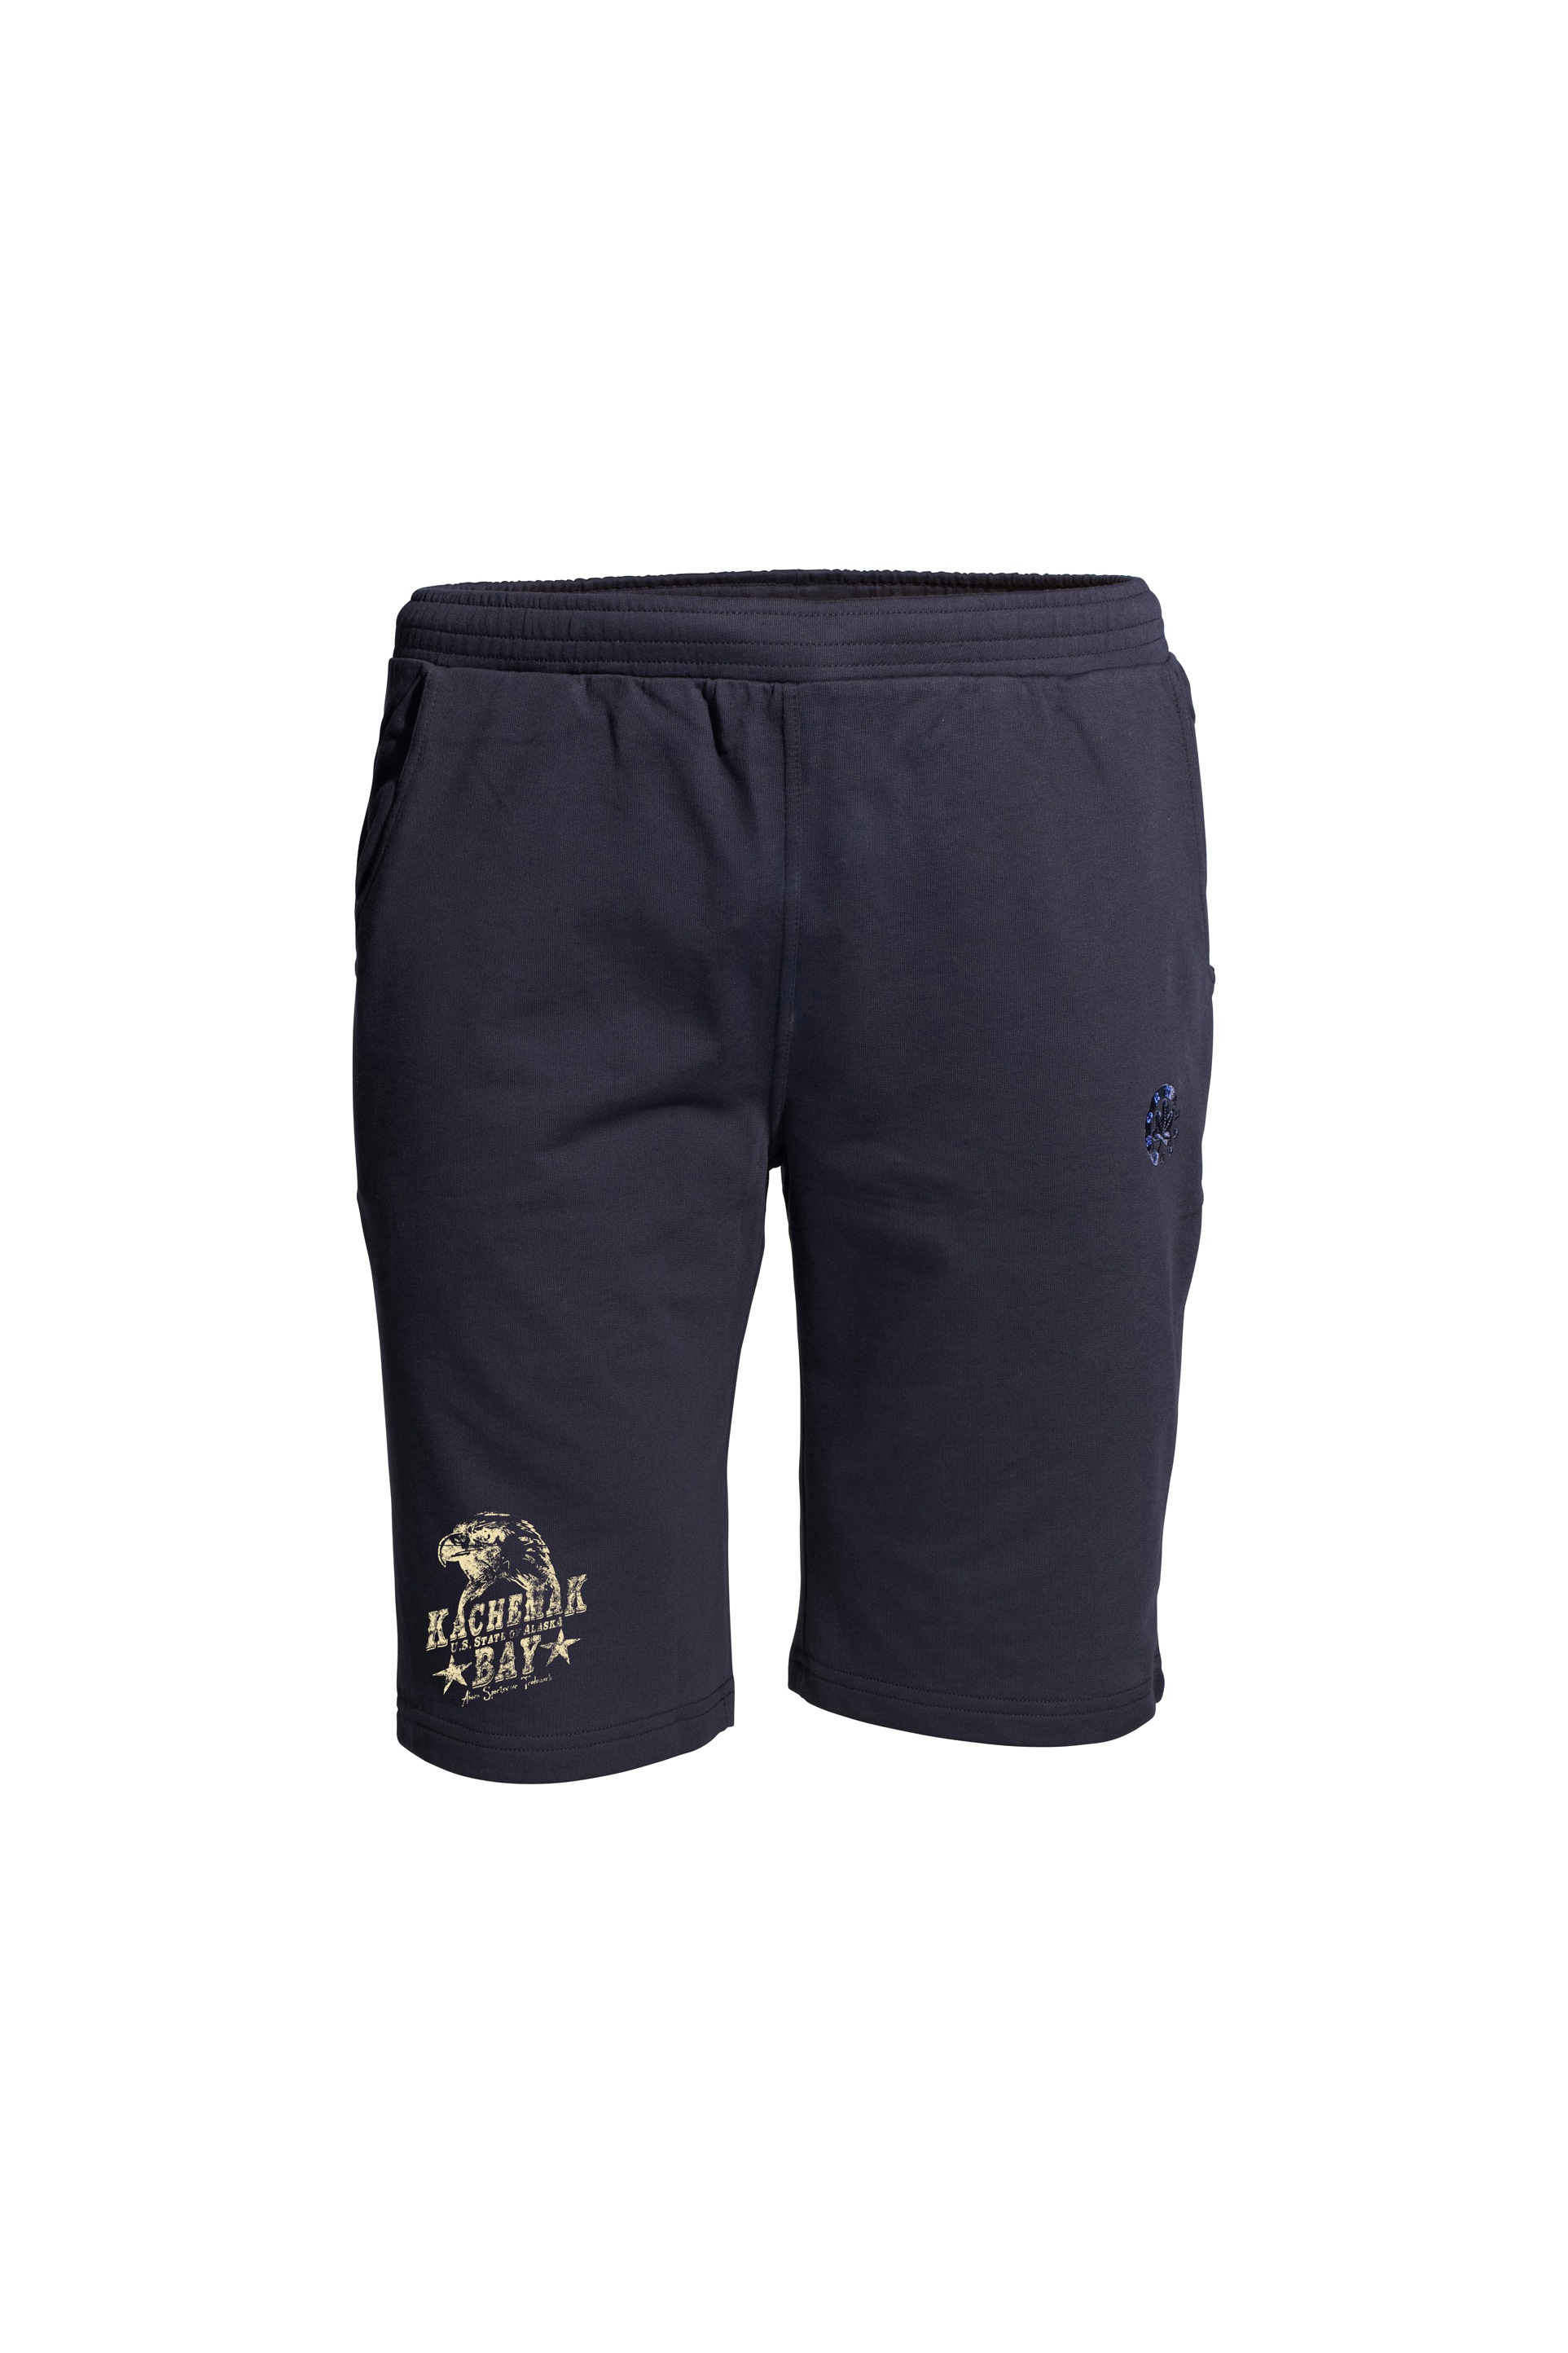 AHORN SPORTSWEAR Shorts »EAGLE«, mit modischem Print